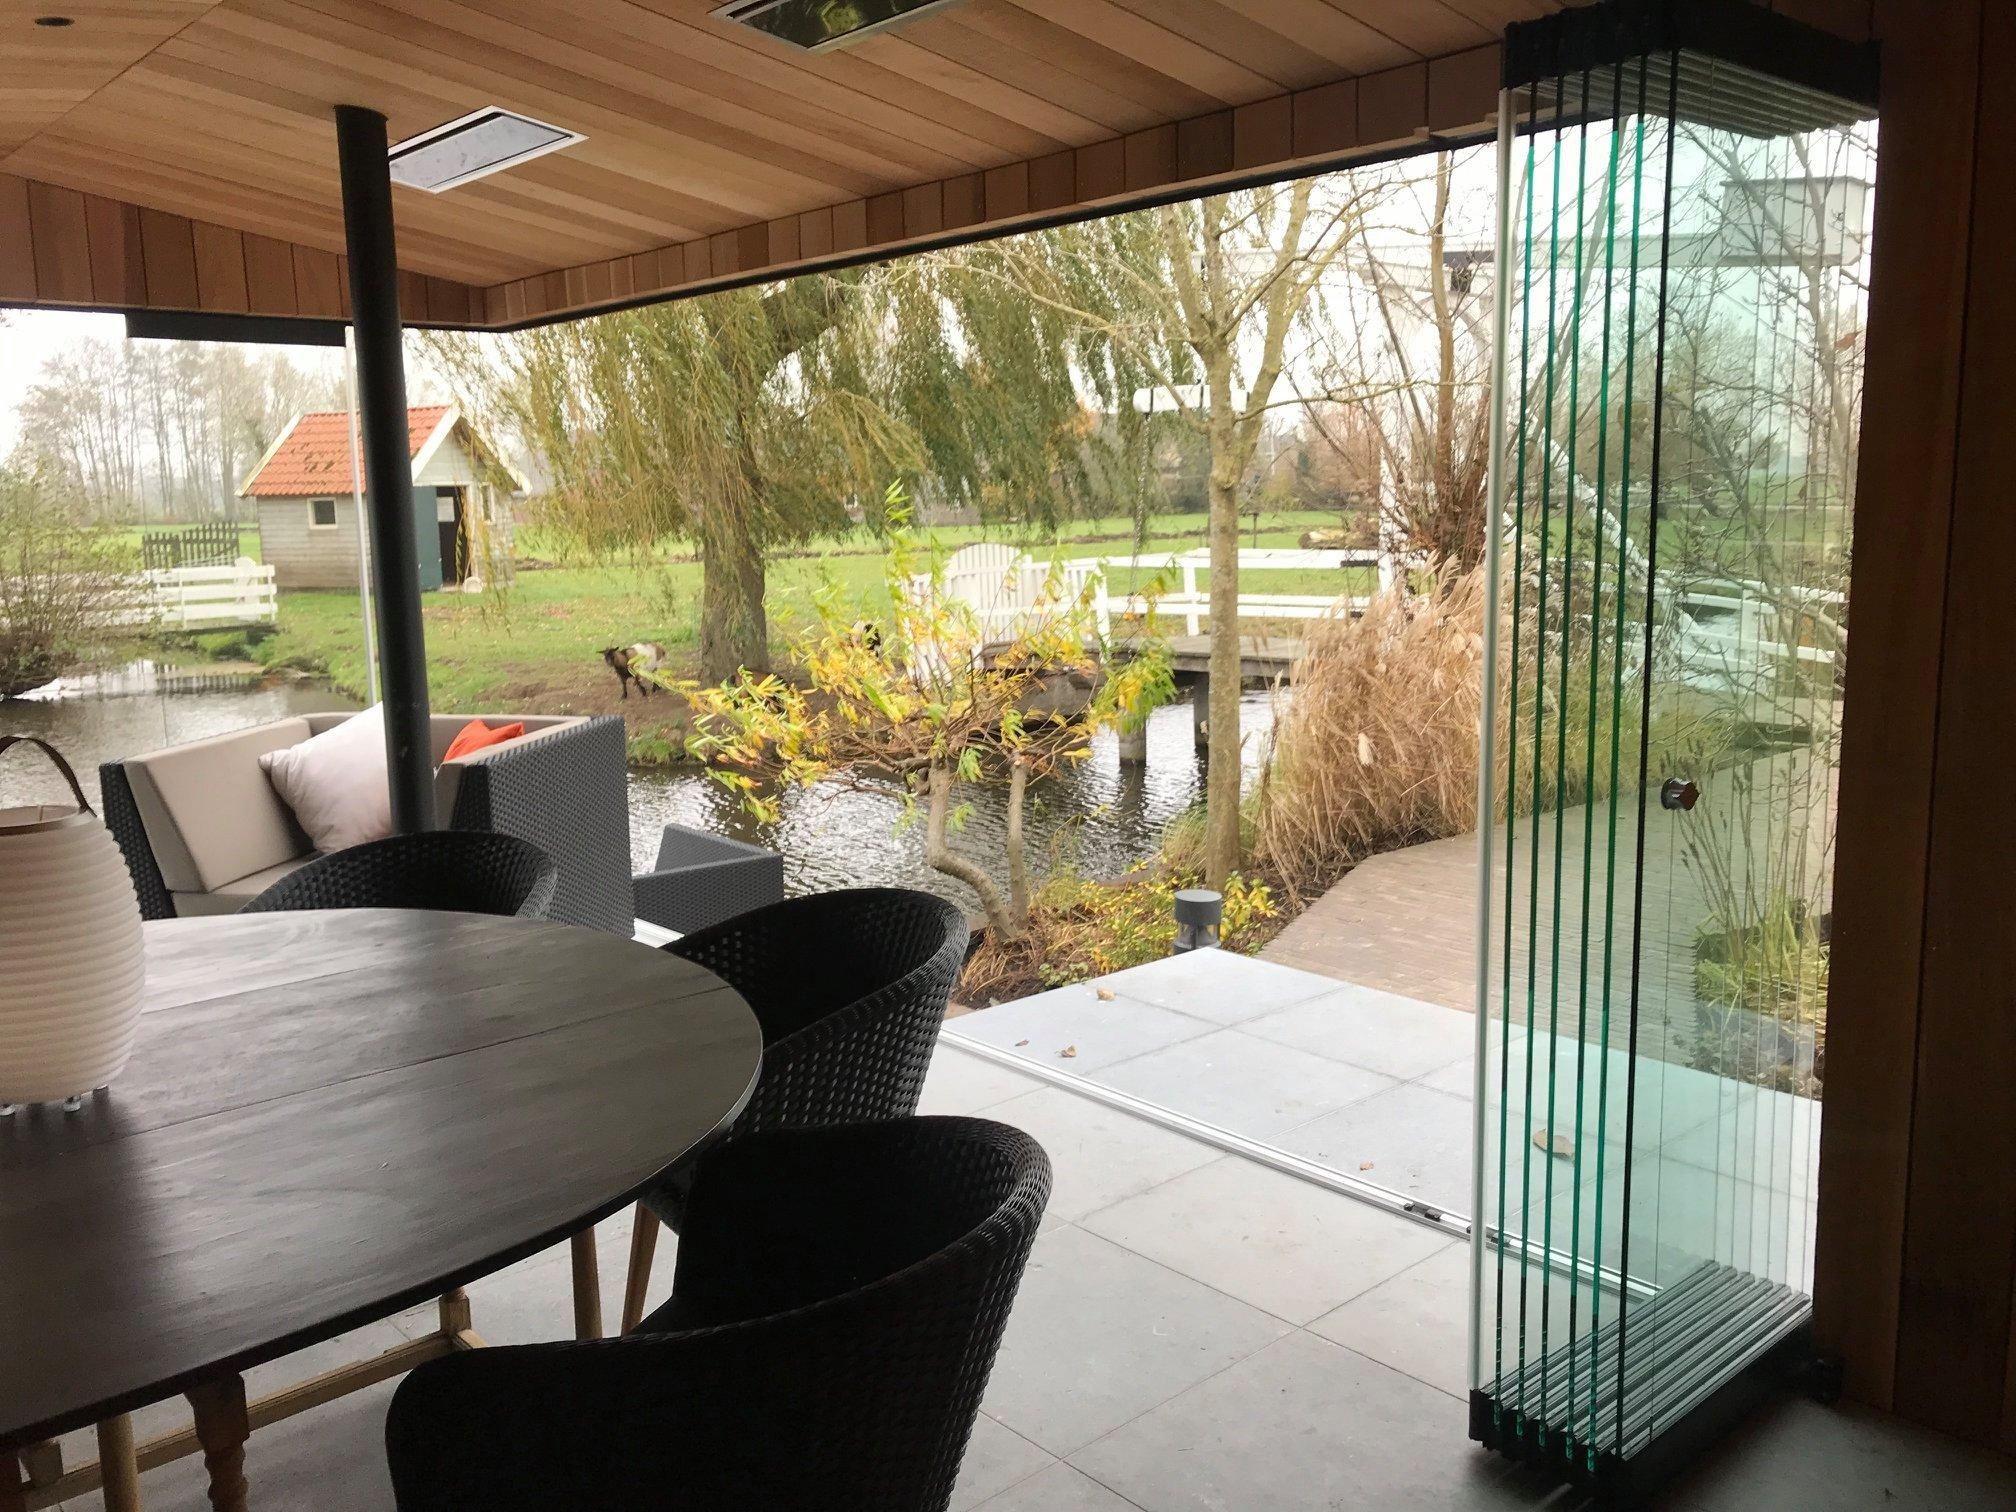 Poolhäuser mit Panoramablick! 🌅
Genieße mit den Sunflex Schiebe-Dreh-Türen einen klaren und freien Panoramablick!